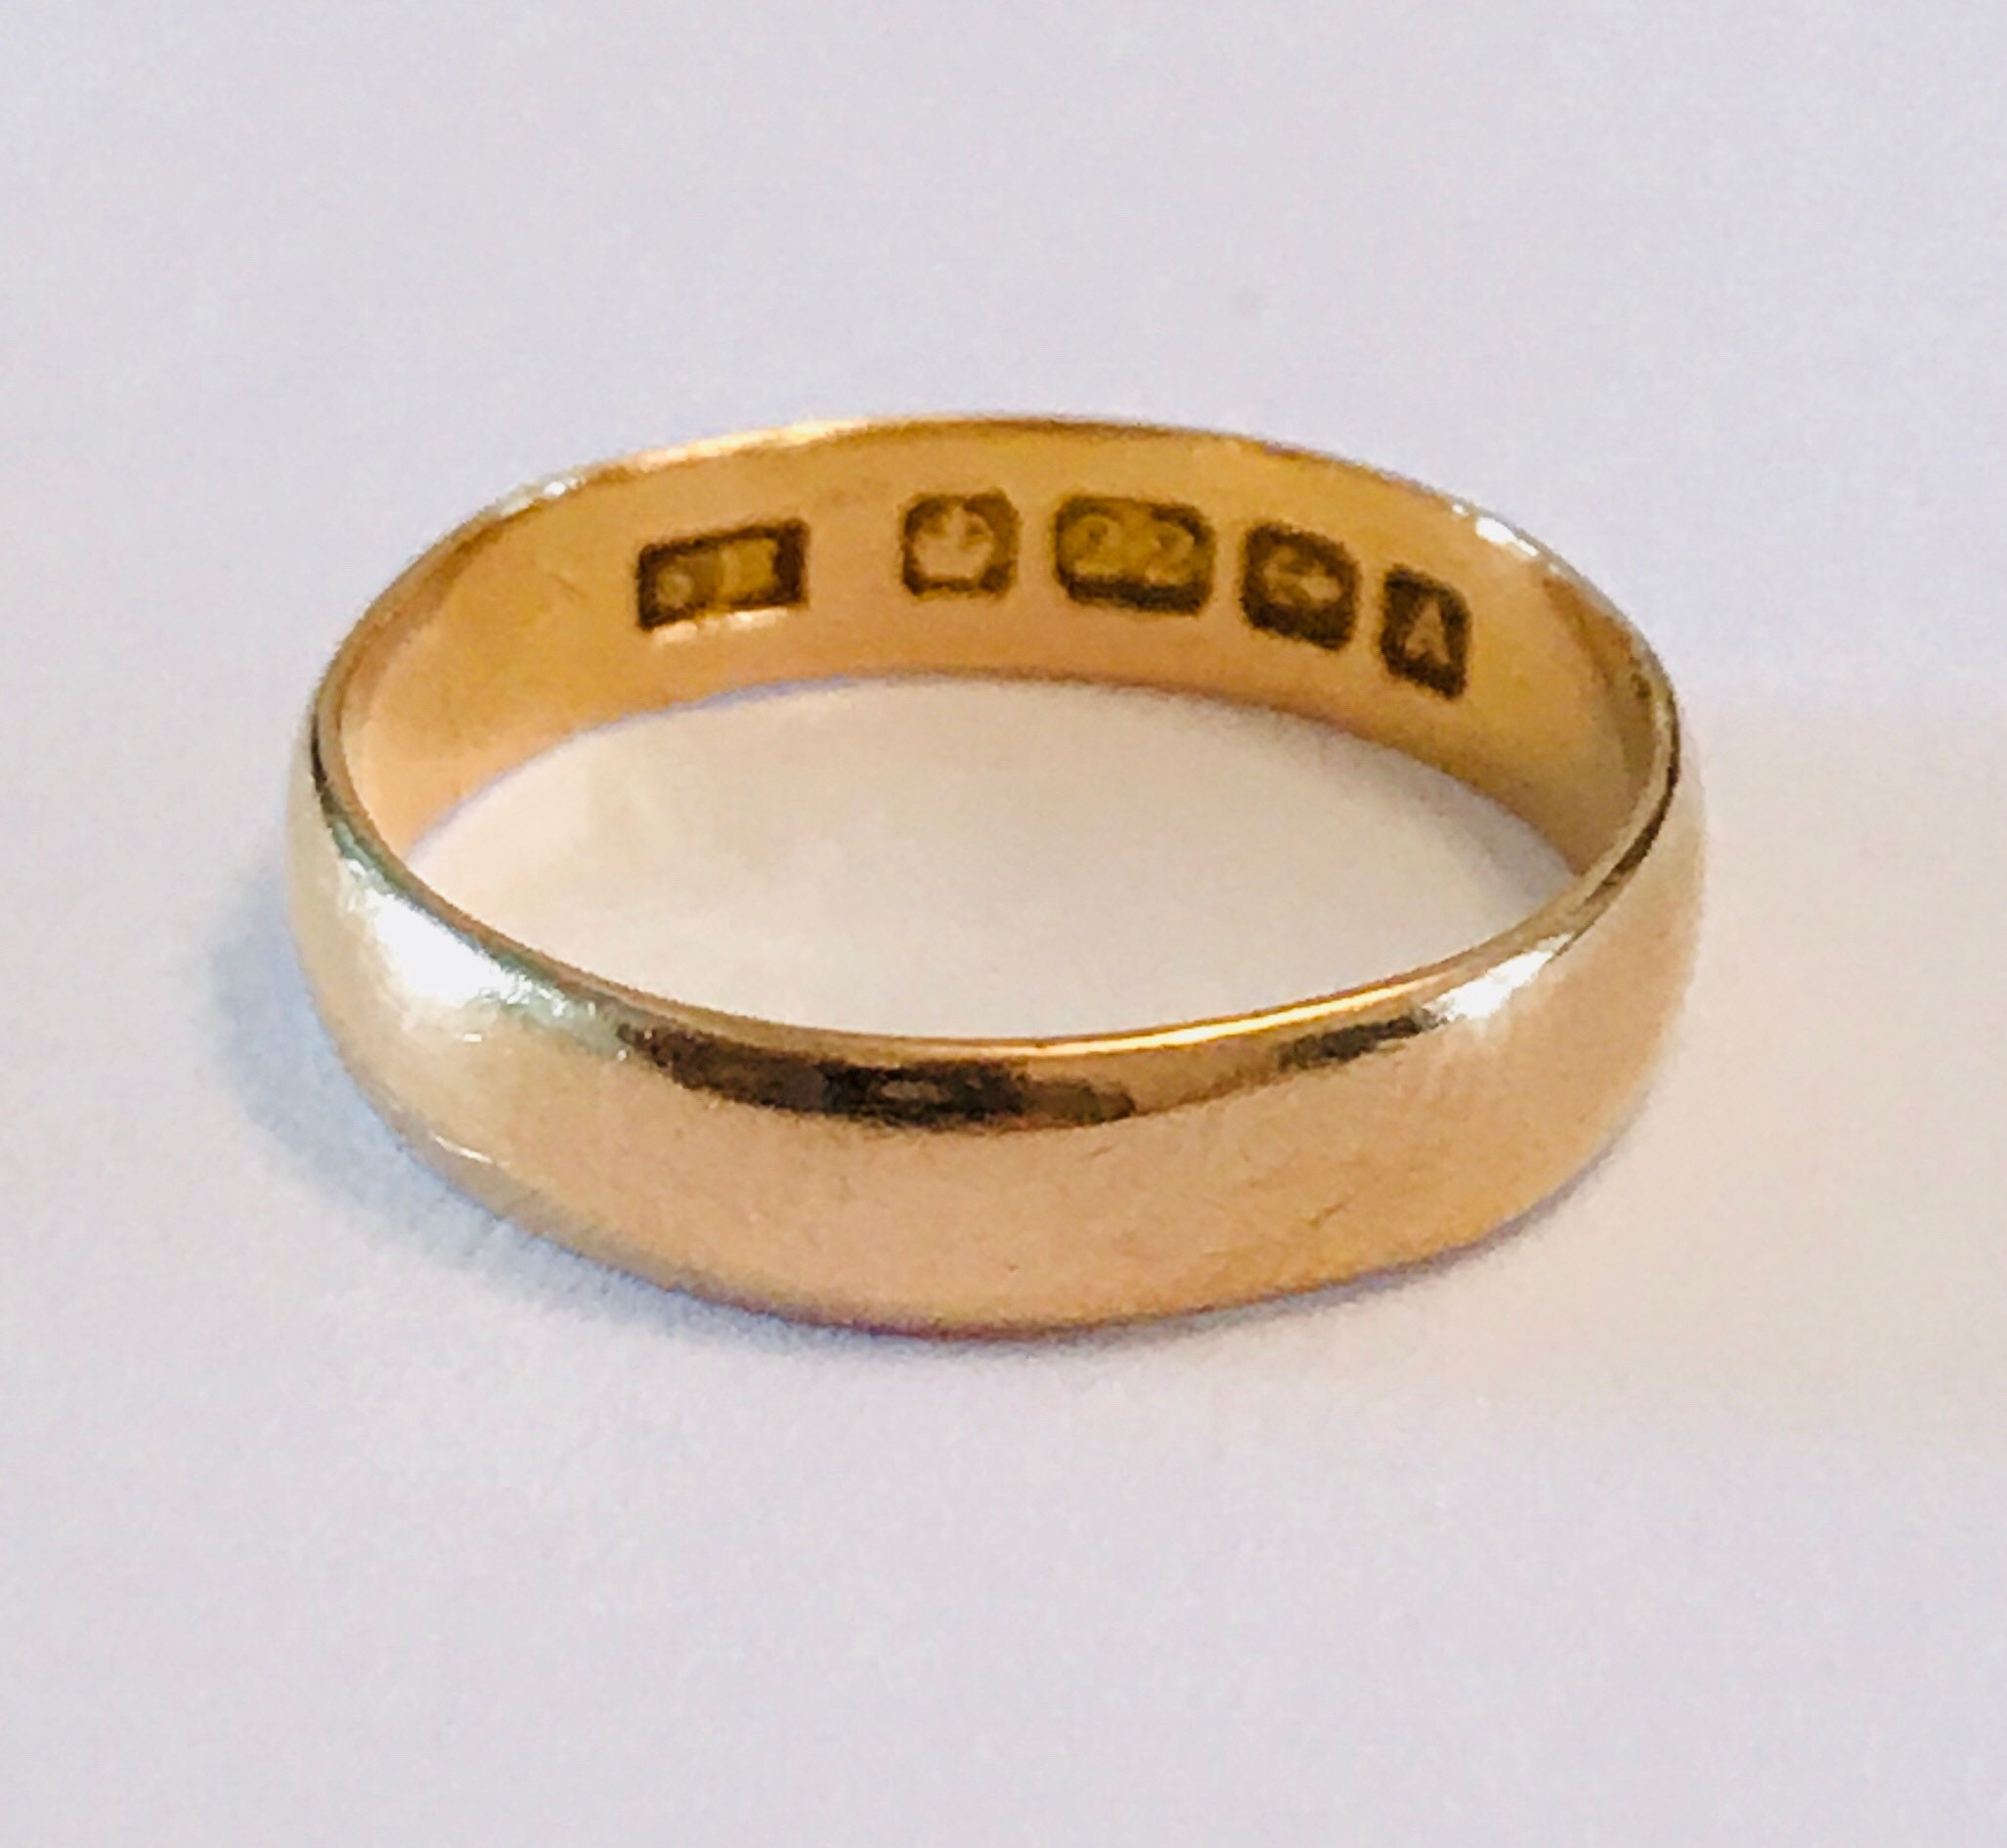 Superb antique 22ct gold wedding ring hallmarked